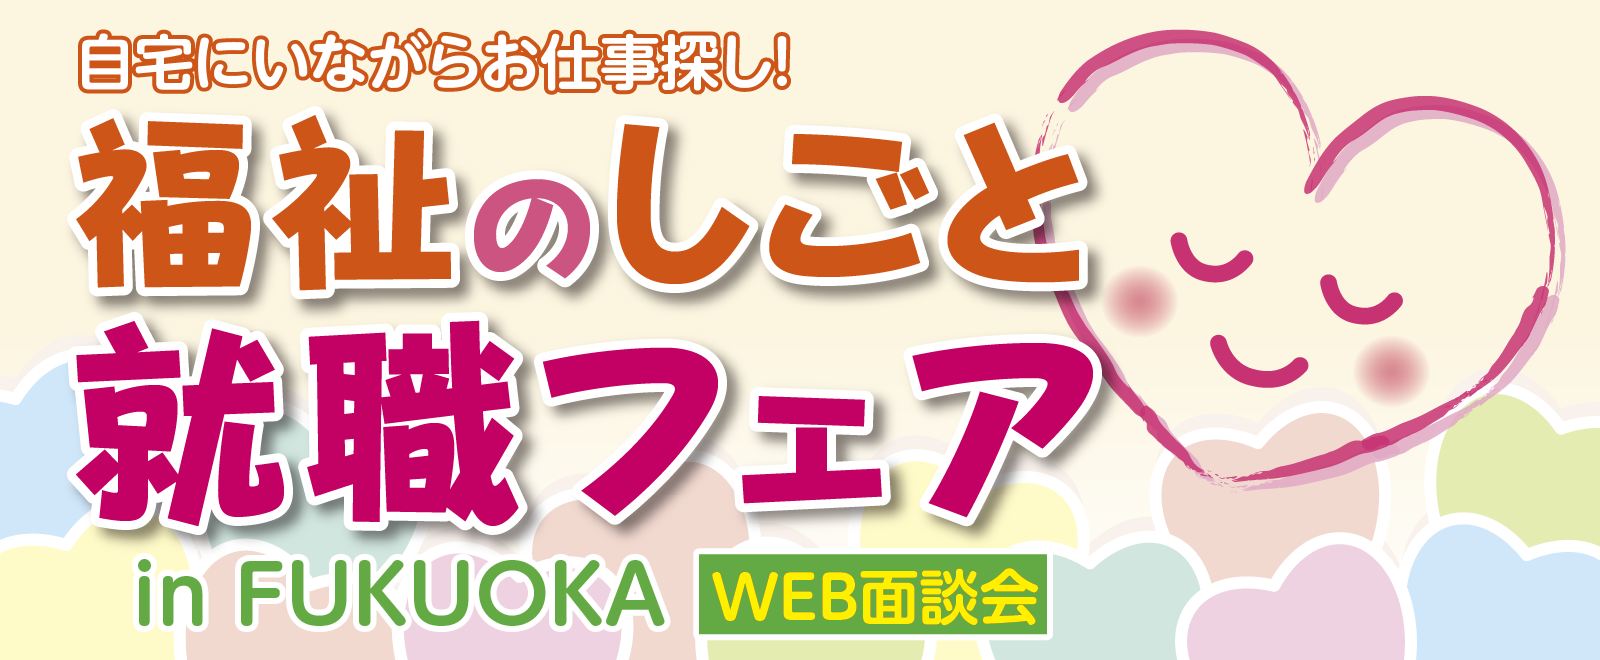 福祉のしごと就職フェア in FUKUOKA【WEB面談会】